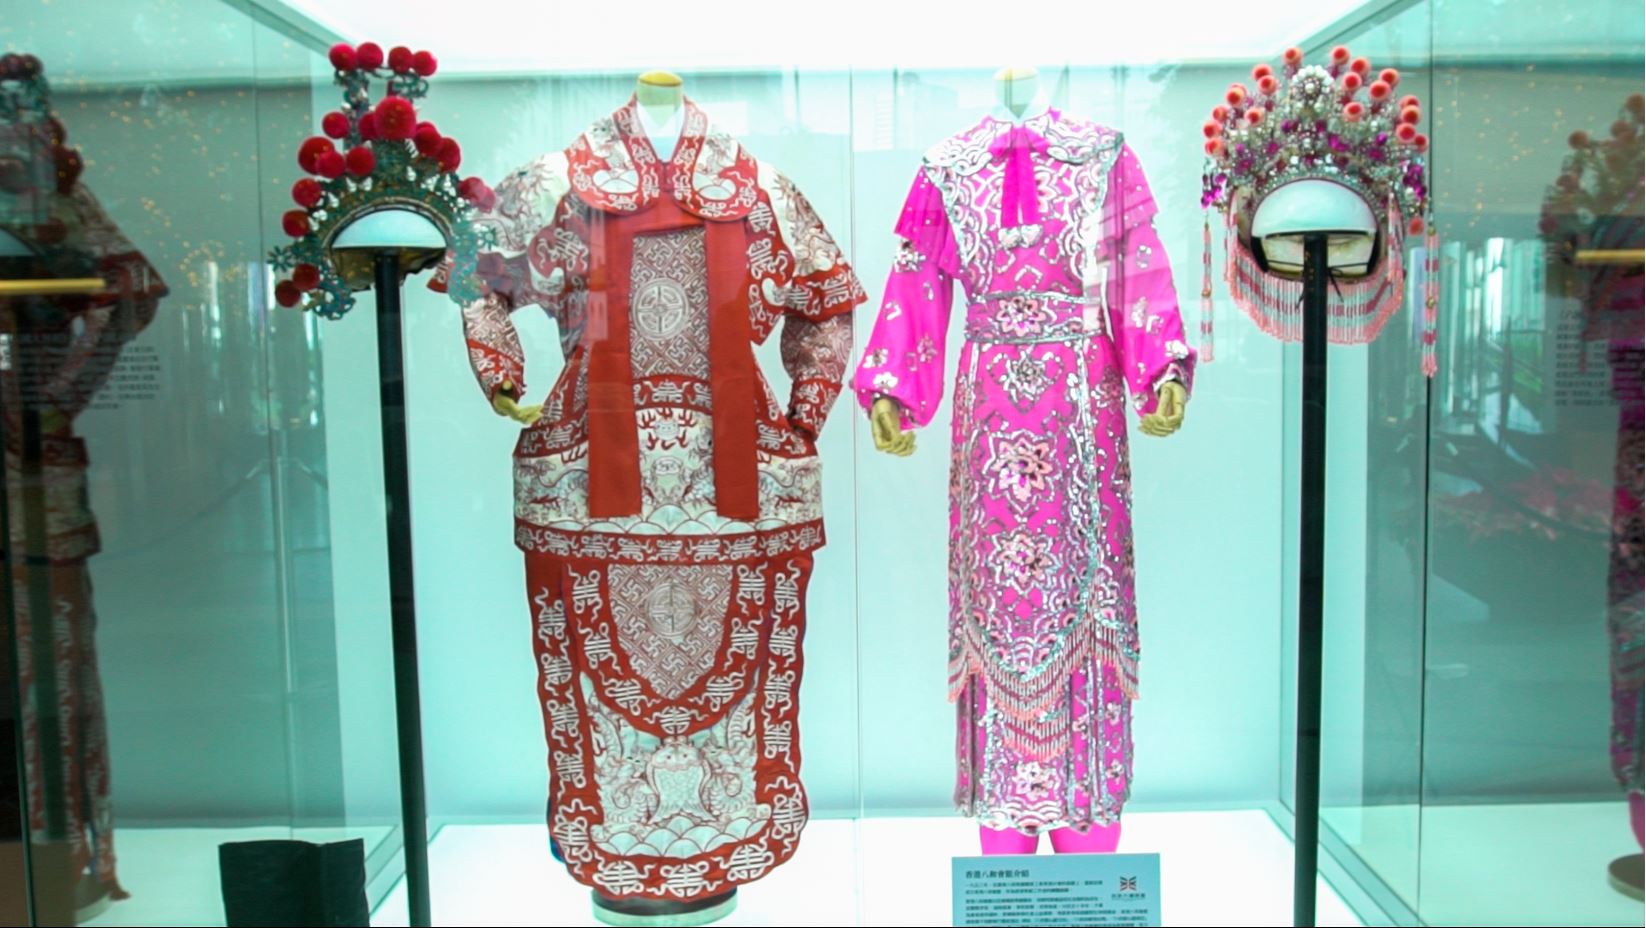 「『同舟共濟 志同道合』港穗雙城圖片展覽」得到香港八和會館借出汪明荃博士及羅家英先生的戲服作展覽。